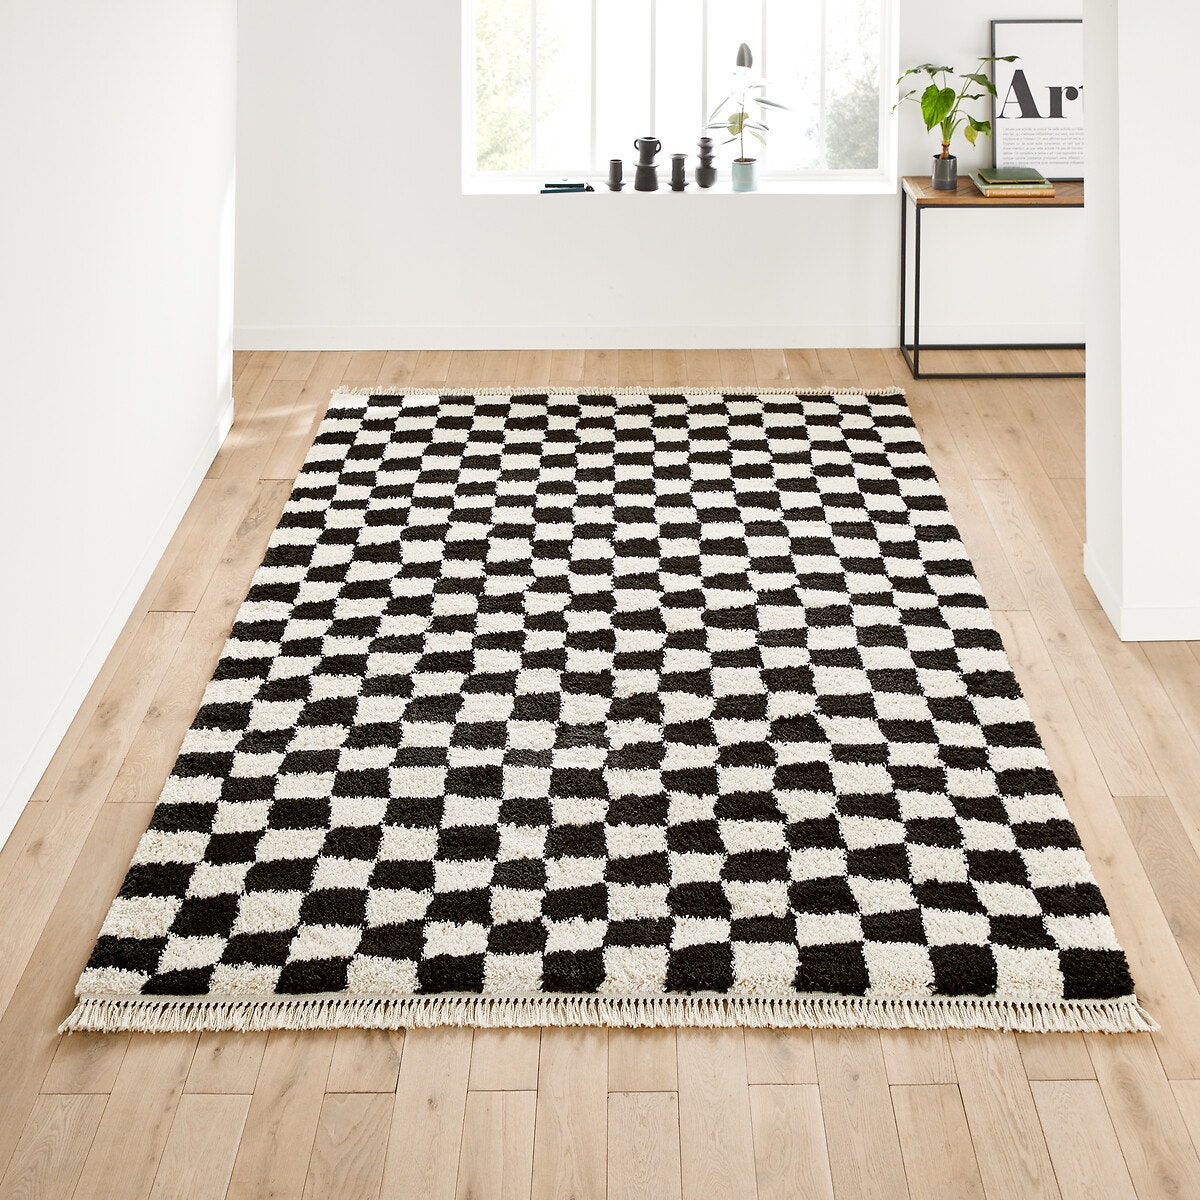 Σπίτι > Διακόσμηση > Χαλιά > Χαλιά καθιστικού Χαλί XL με μοτίβο σκακιέρας 240x330 cm